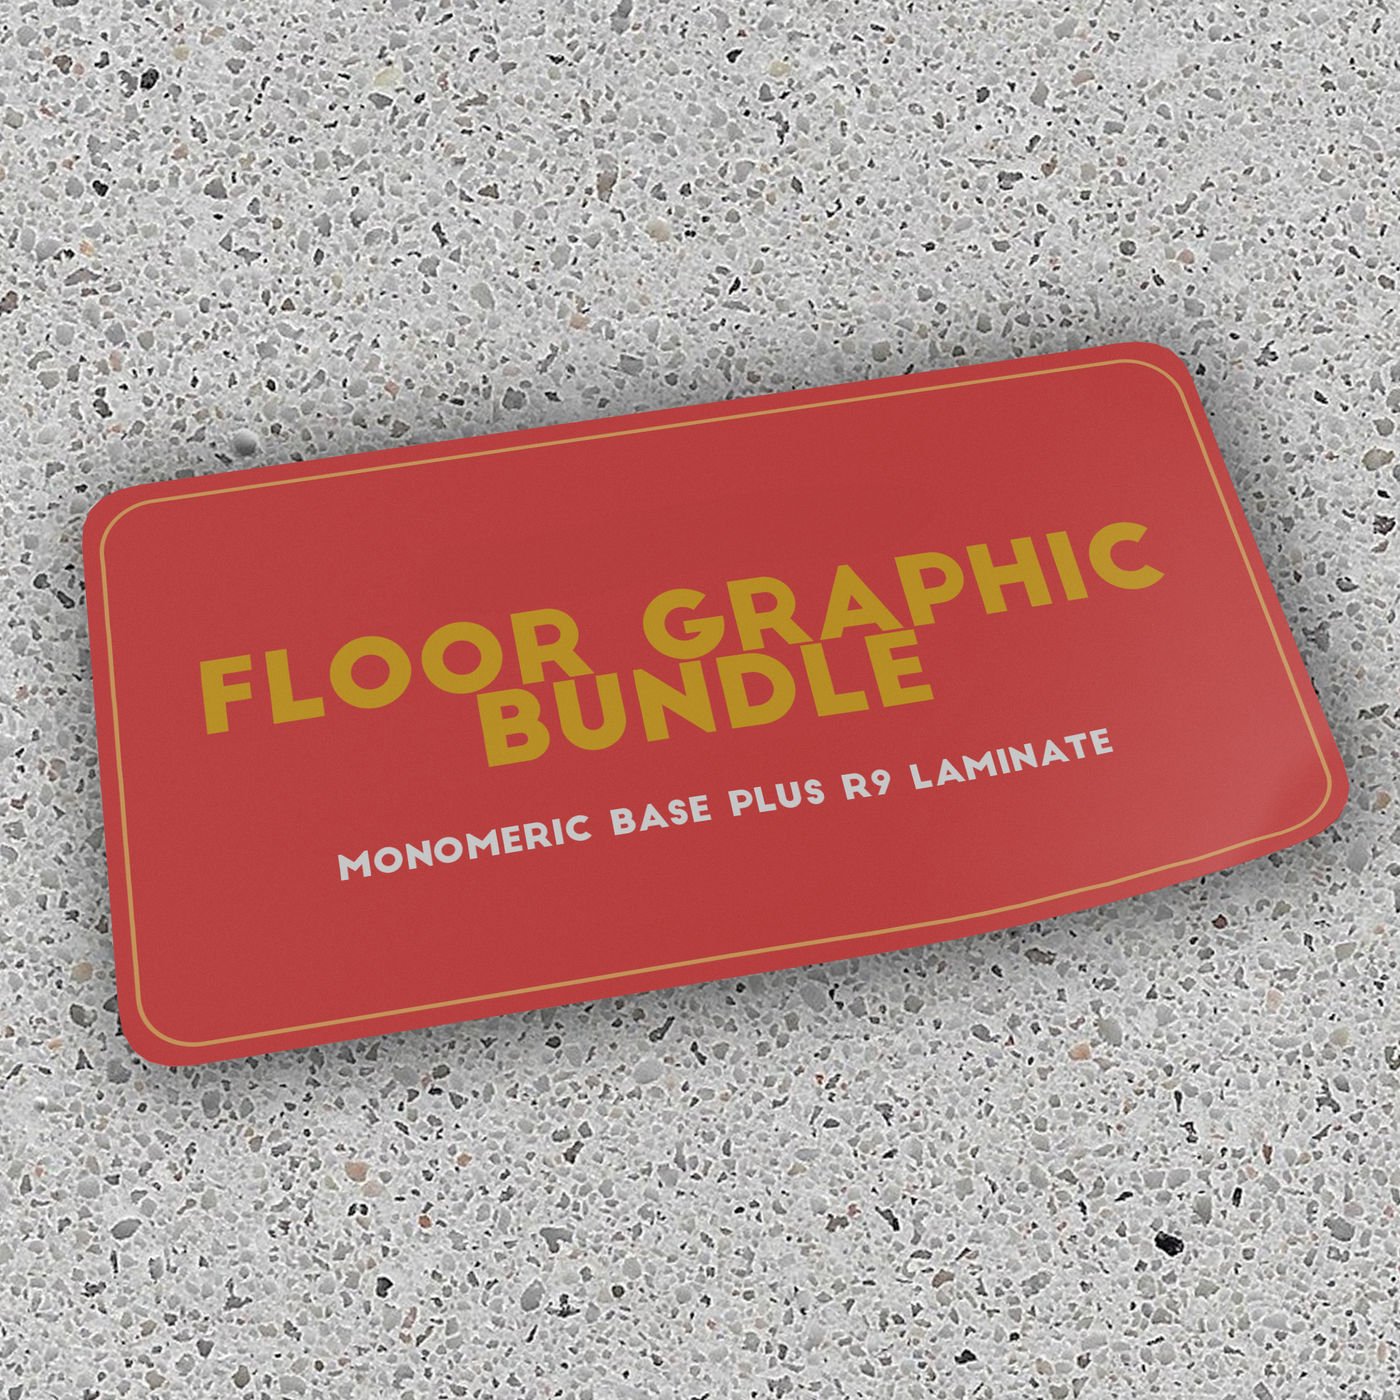 Floor Graphic Bundle